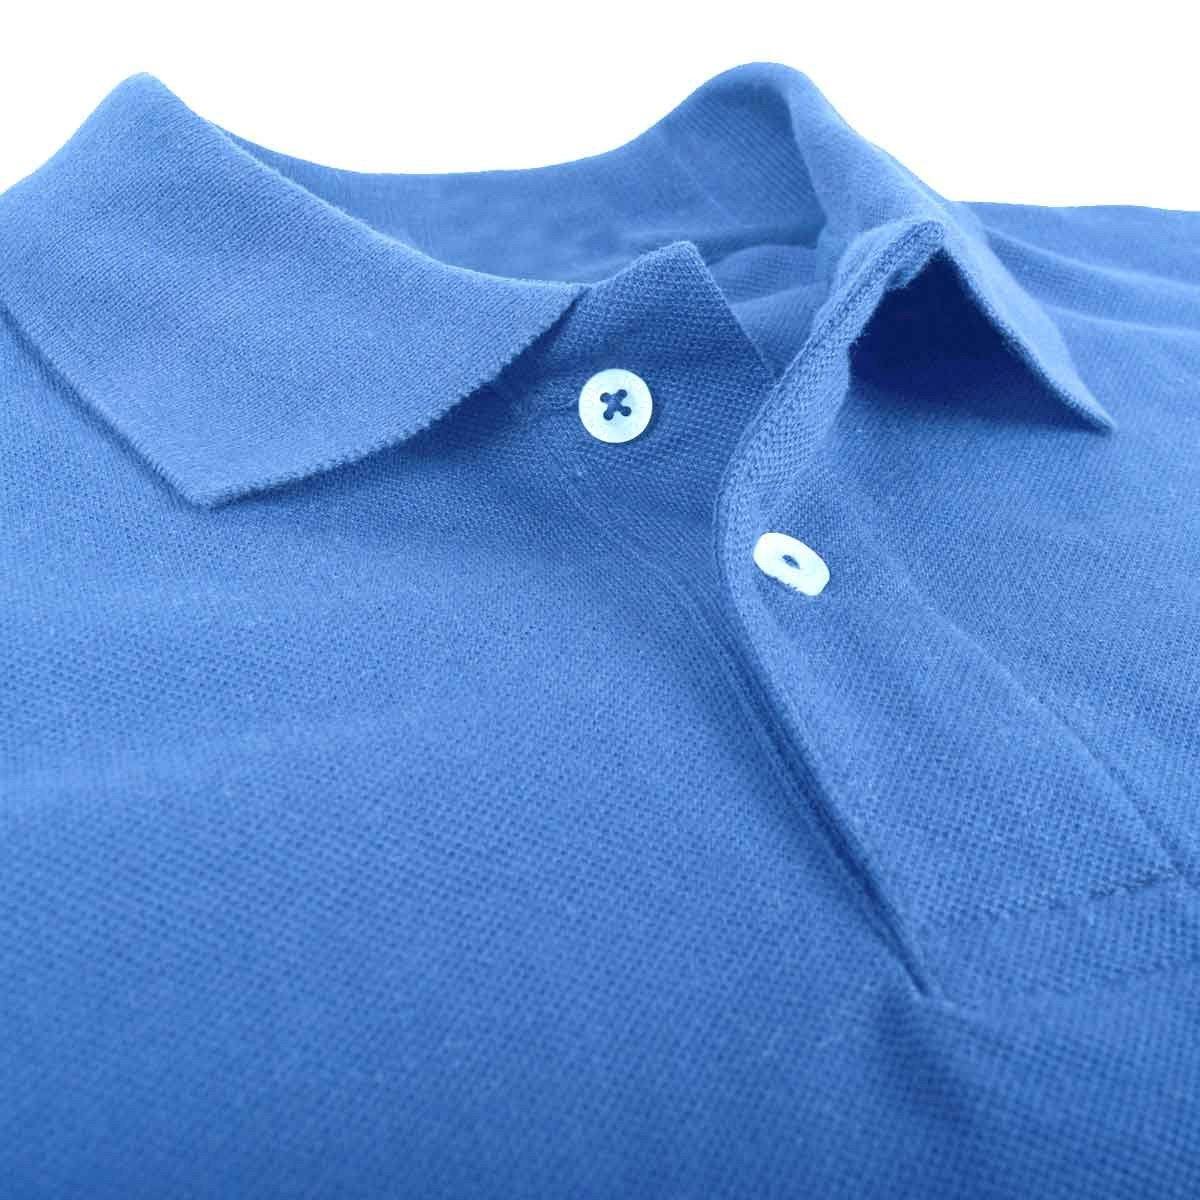 Totga Short Sleeve B Quality Polo Shirt001 B Quality Image 